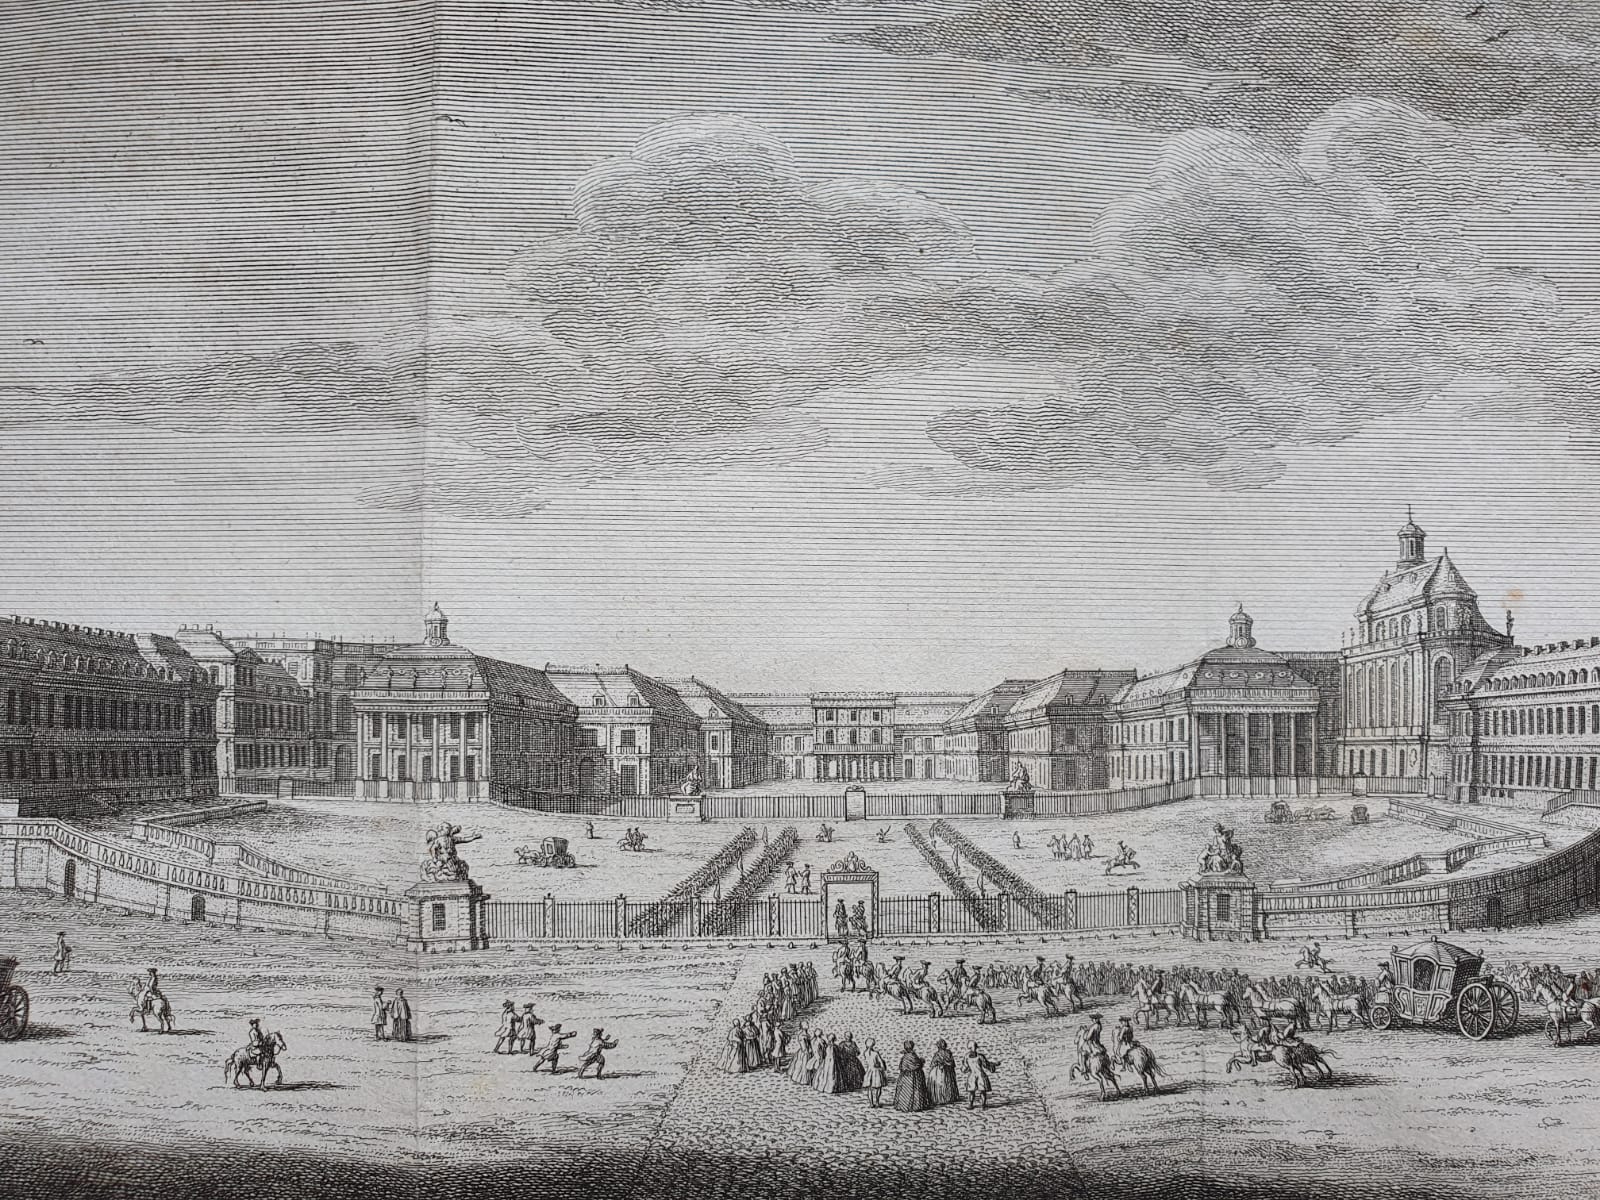 [Antique print, etching, ets] J.C. Philips, Het Koninklyk Paleis van Versailles, van voren, van het plein te zien, published 1756.